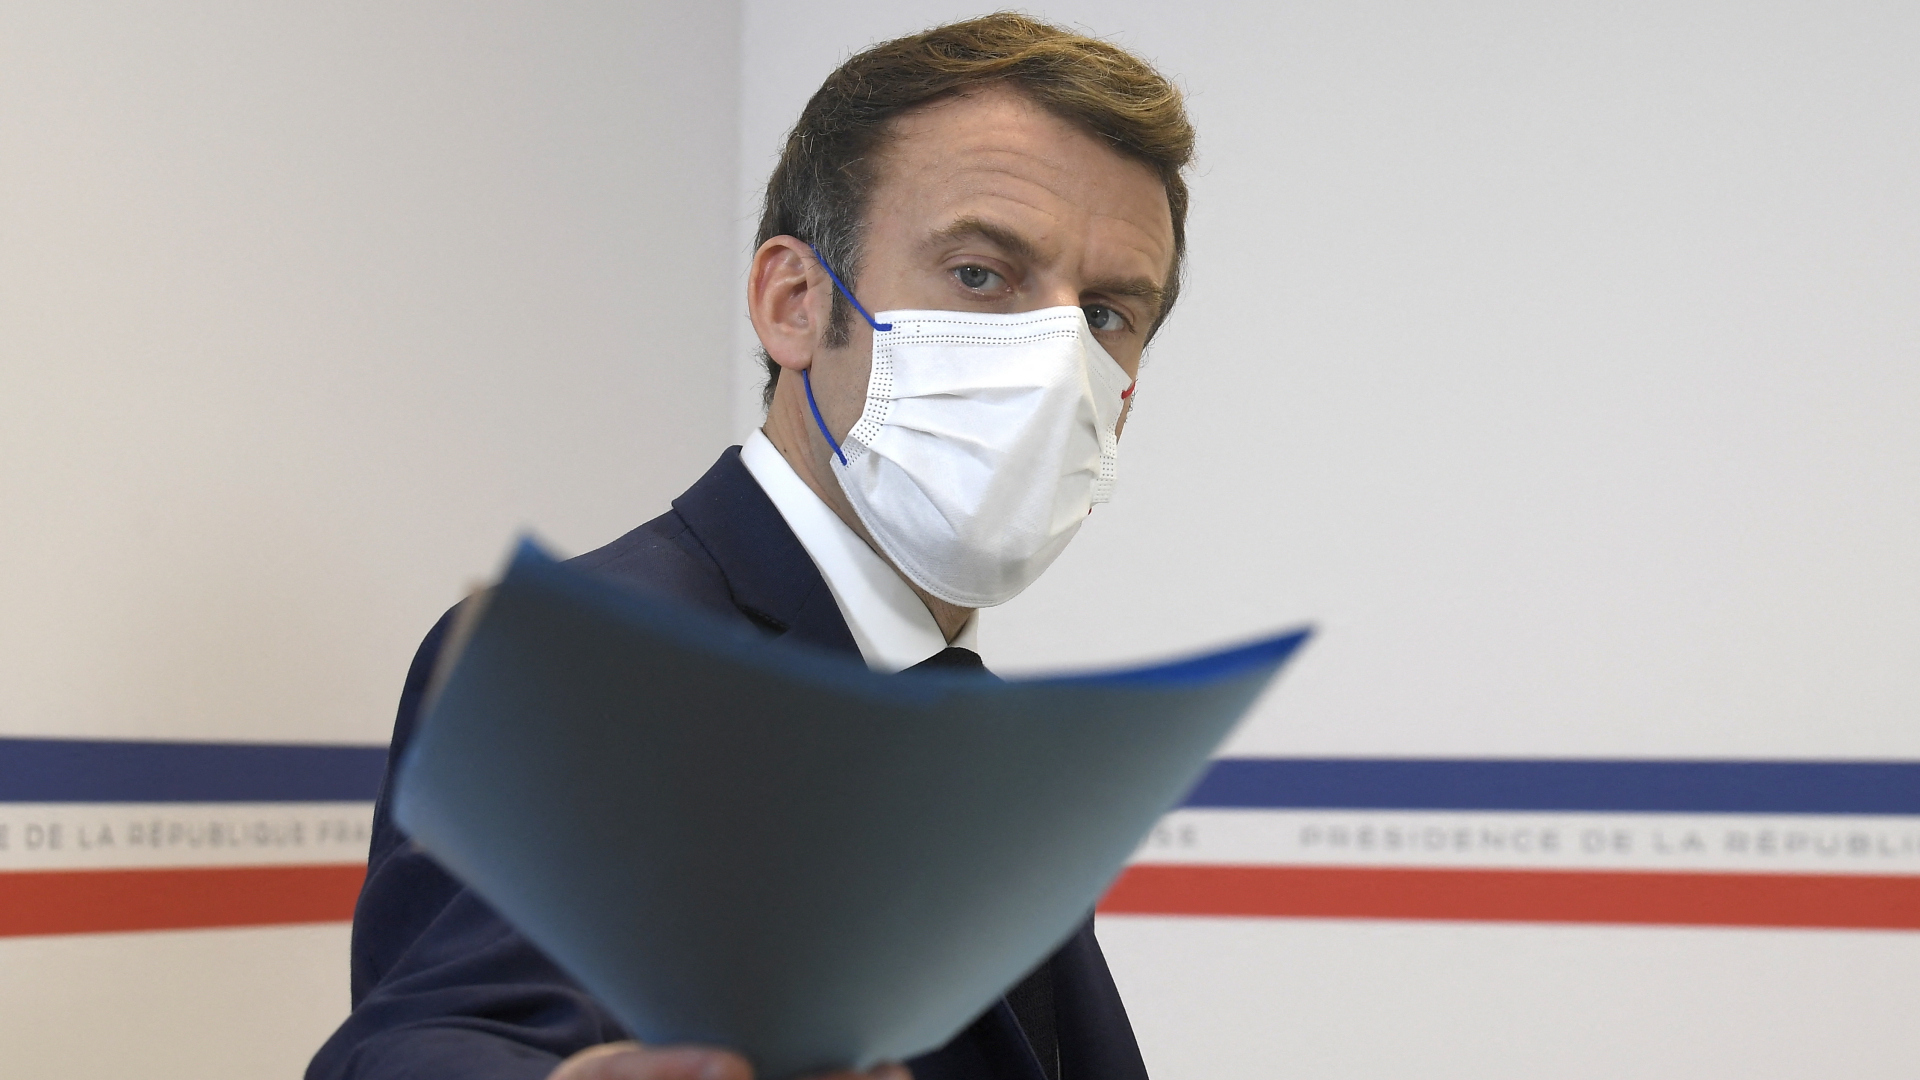 Corona in Frankreich: Macron provoziert Ungeimpfte